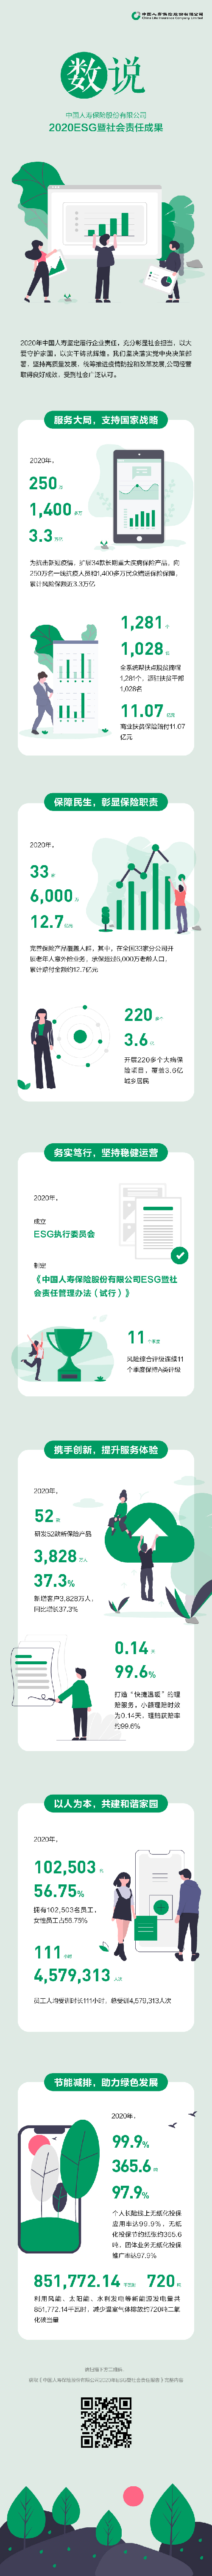 中国人寿发布2020年ESG暨社会责任报告